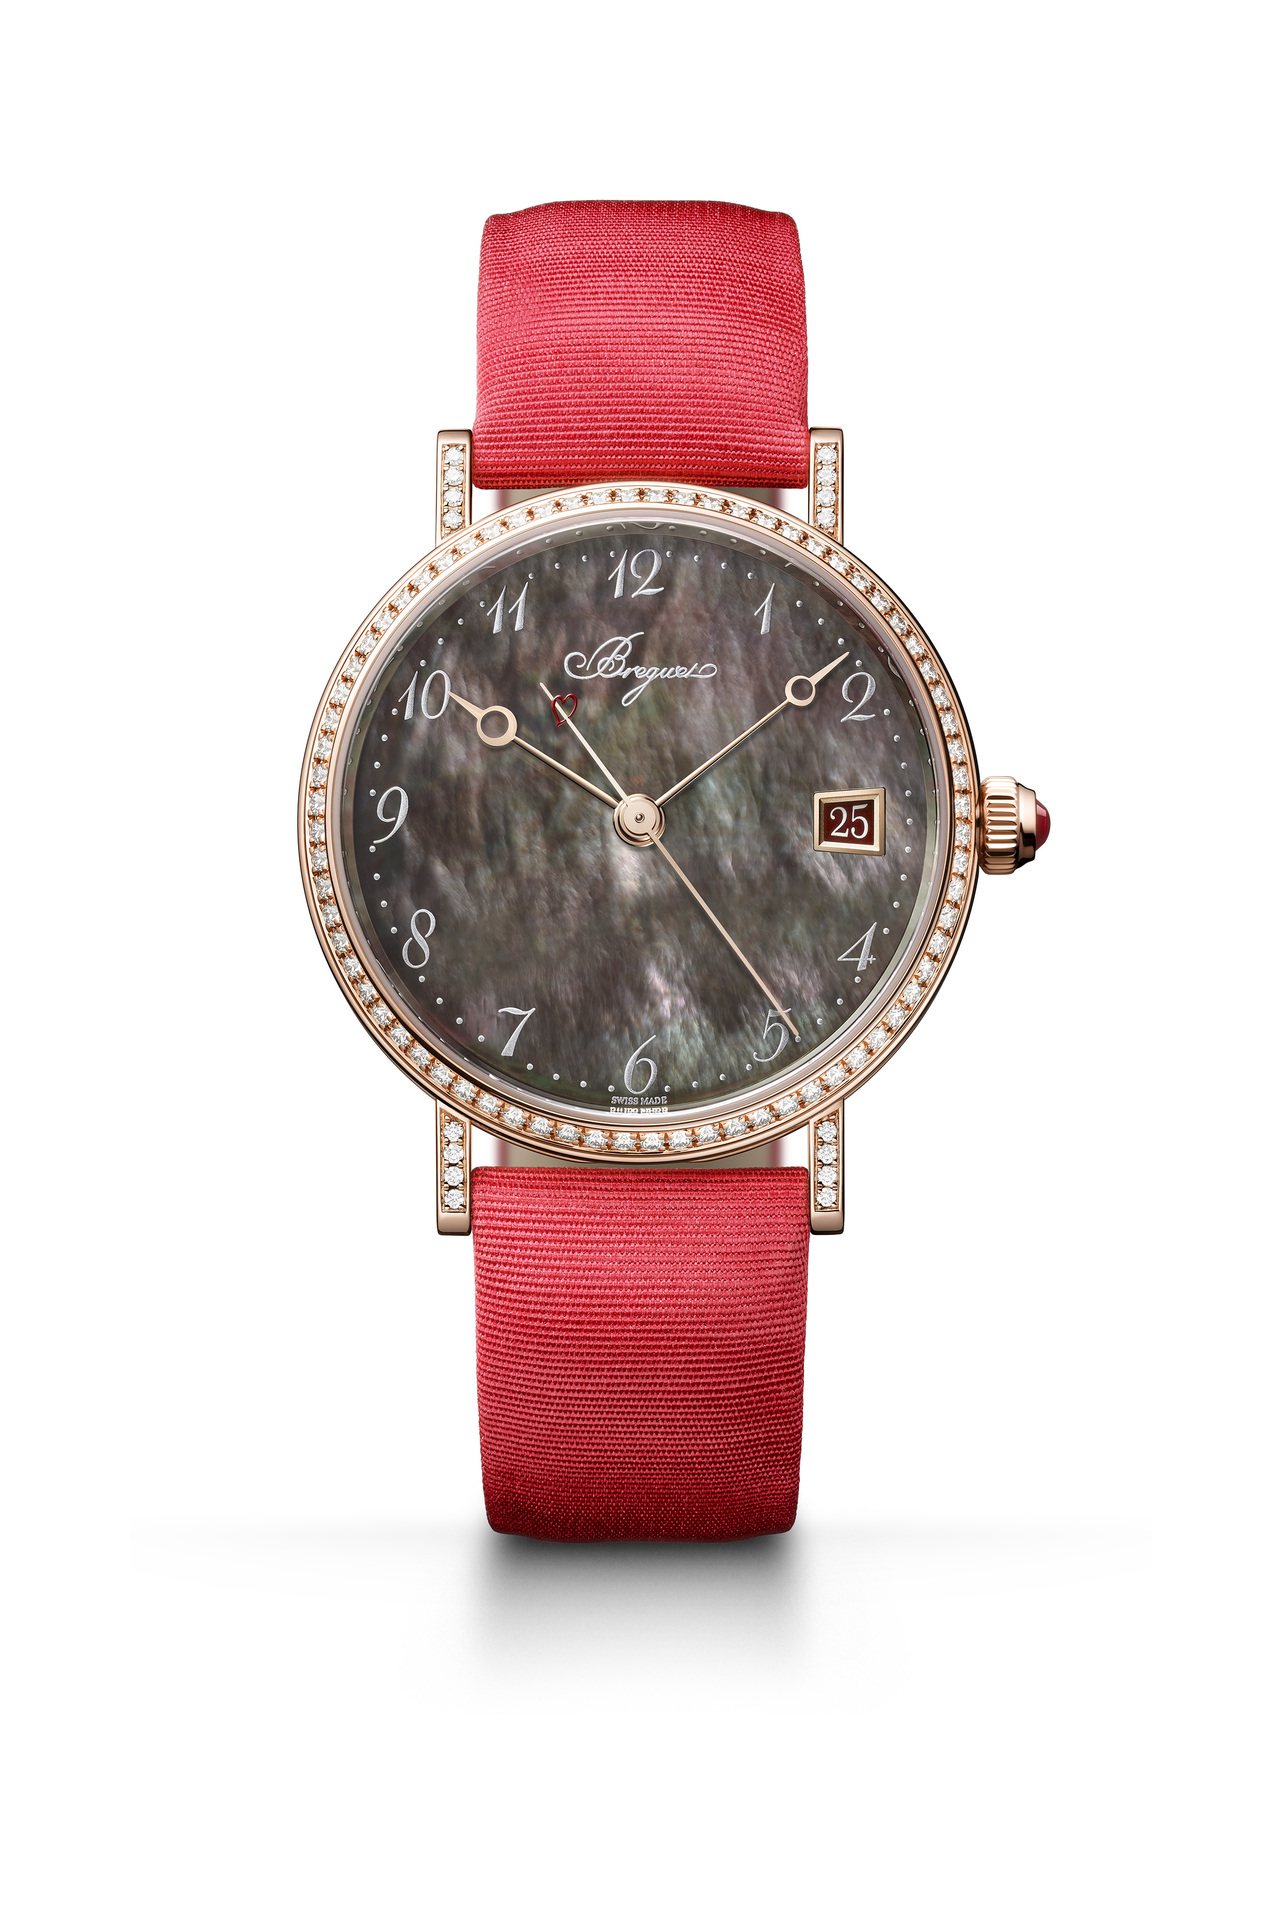 寶璣Classique 9065經典系列大溪地珍珠母貝鑽表，18K玫瑰金表殼搭配...